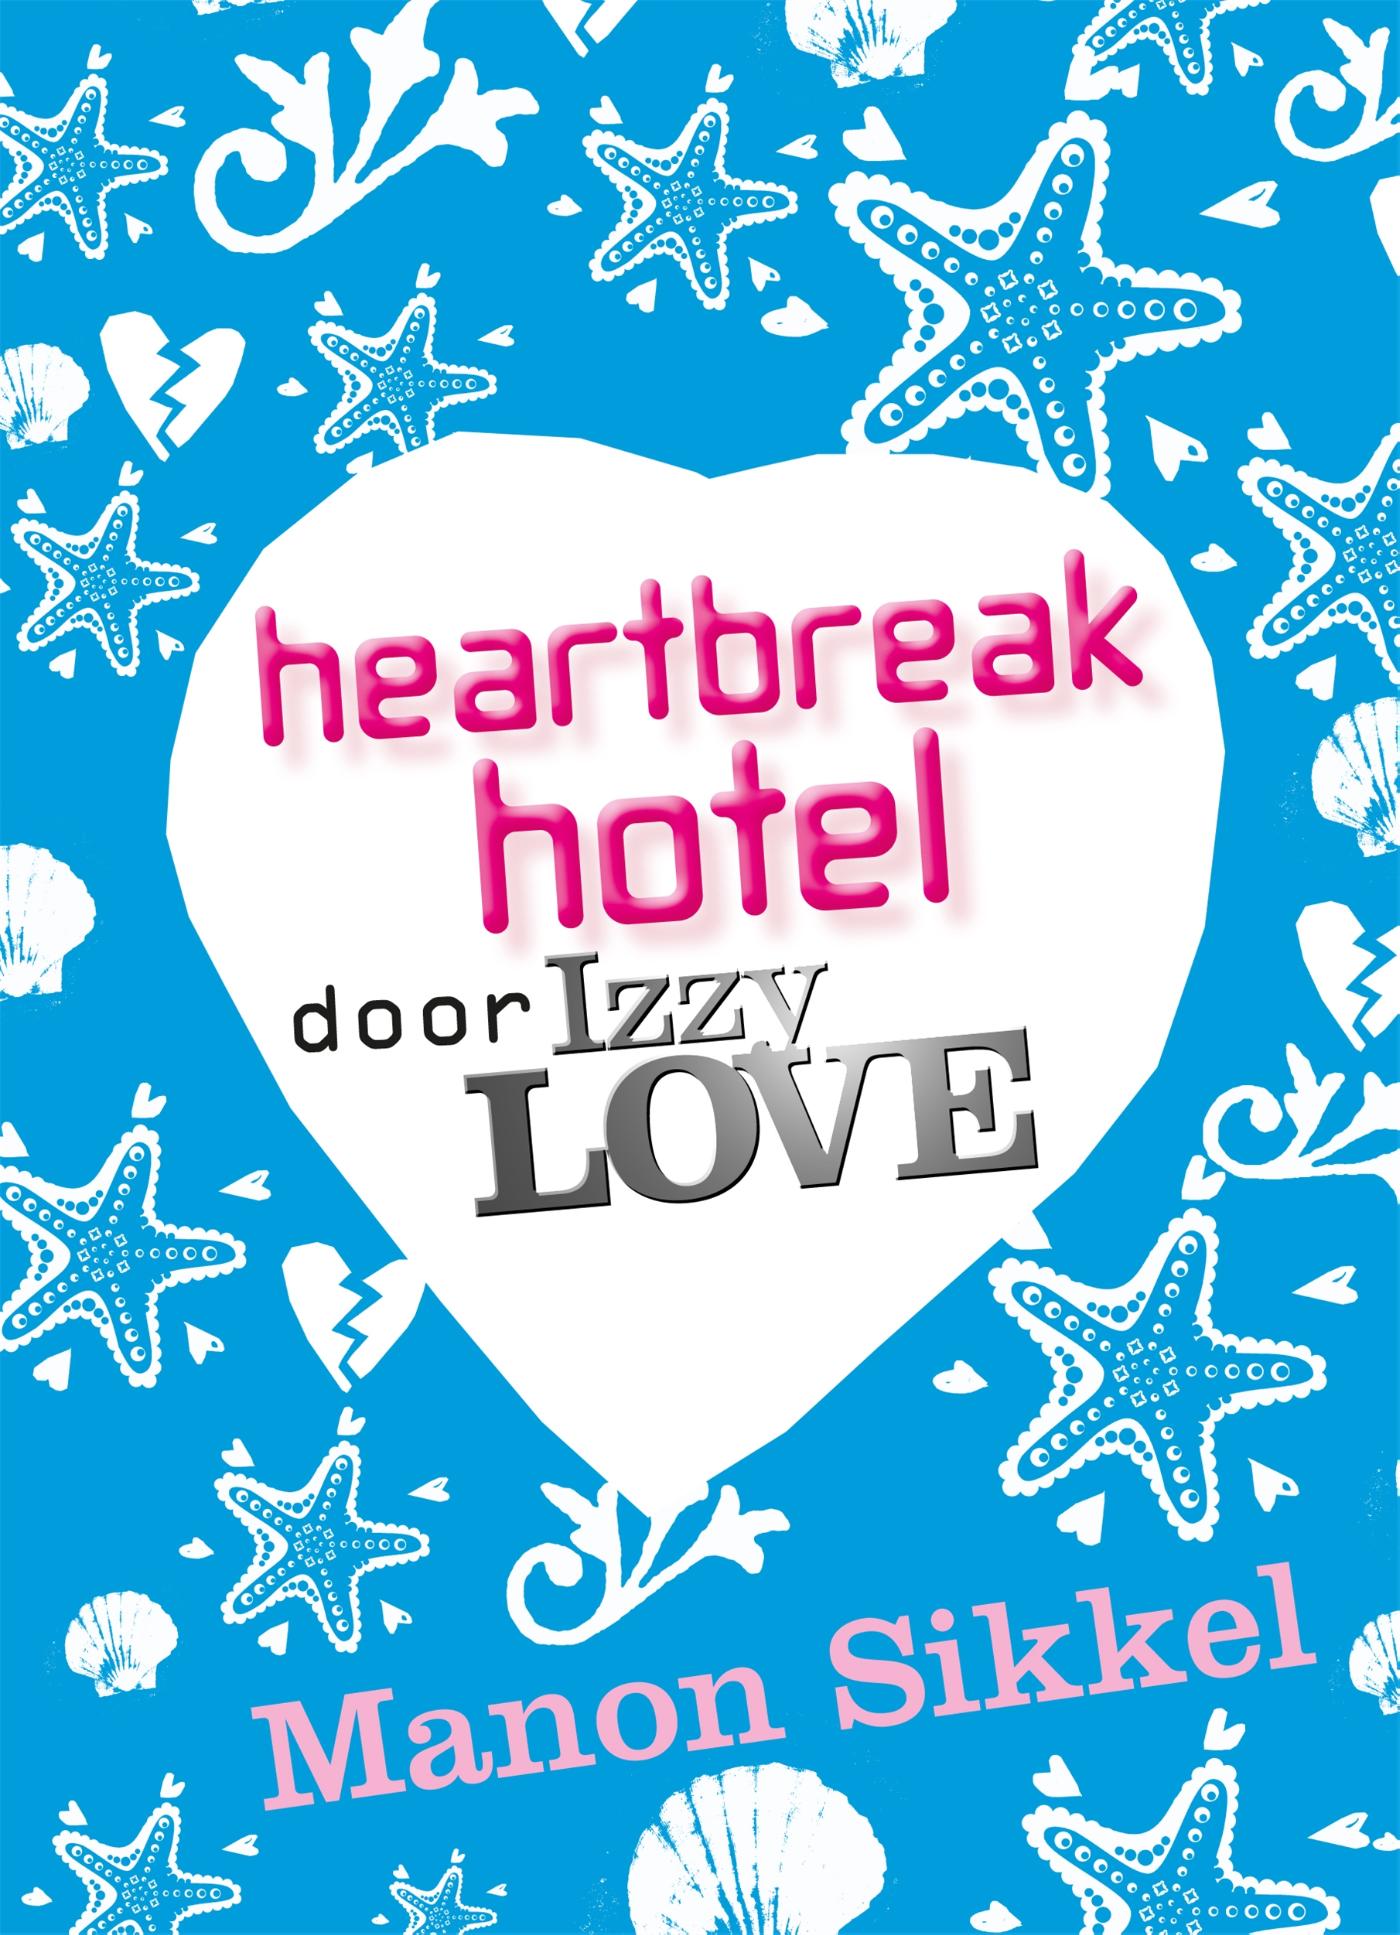 Heartbreak hotel door IzzyLove (Ebook)